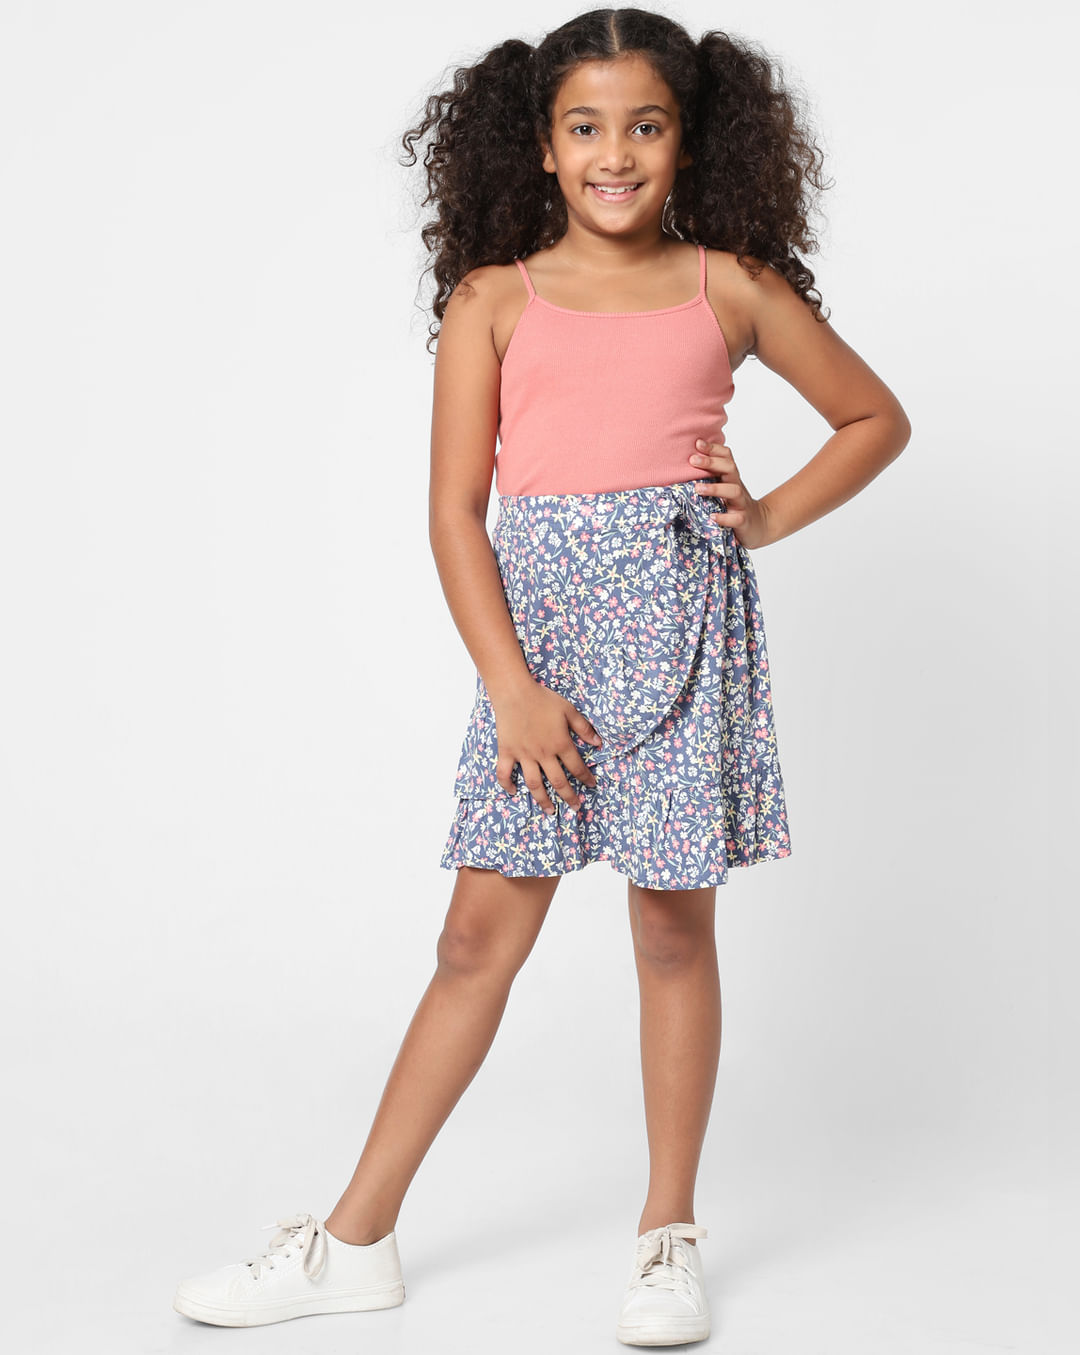 Buy Girls Blue Floral Mock Wrap Skirt Online at KidsOnly